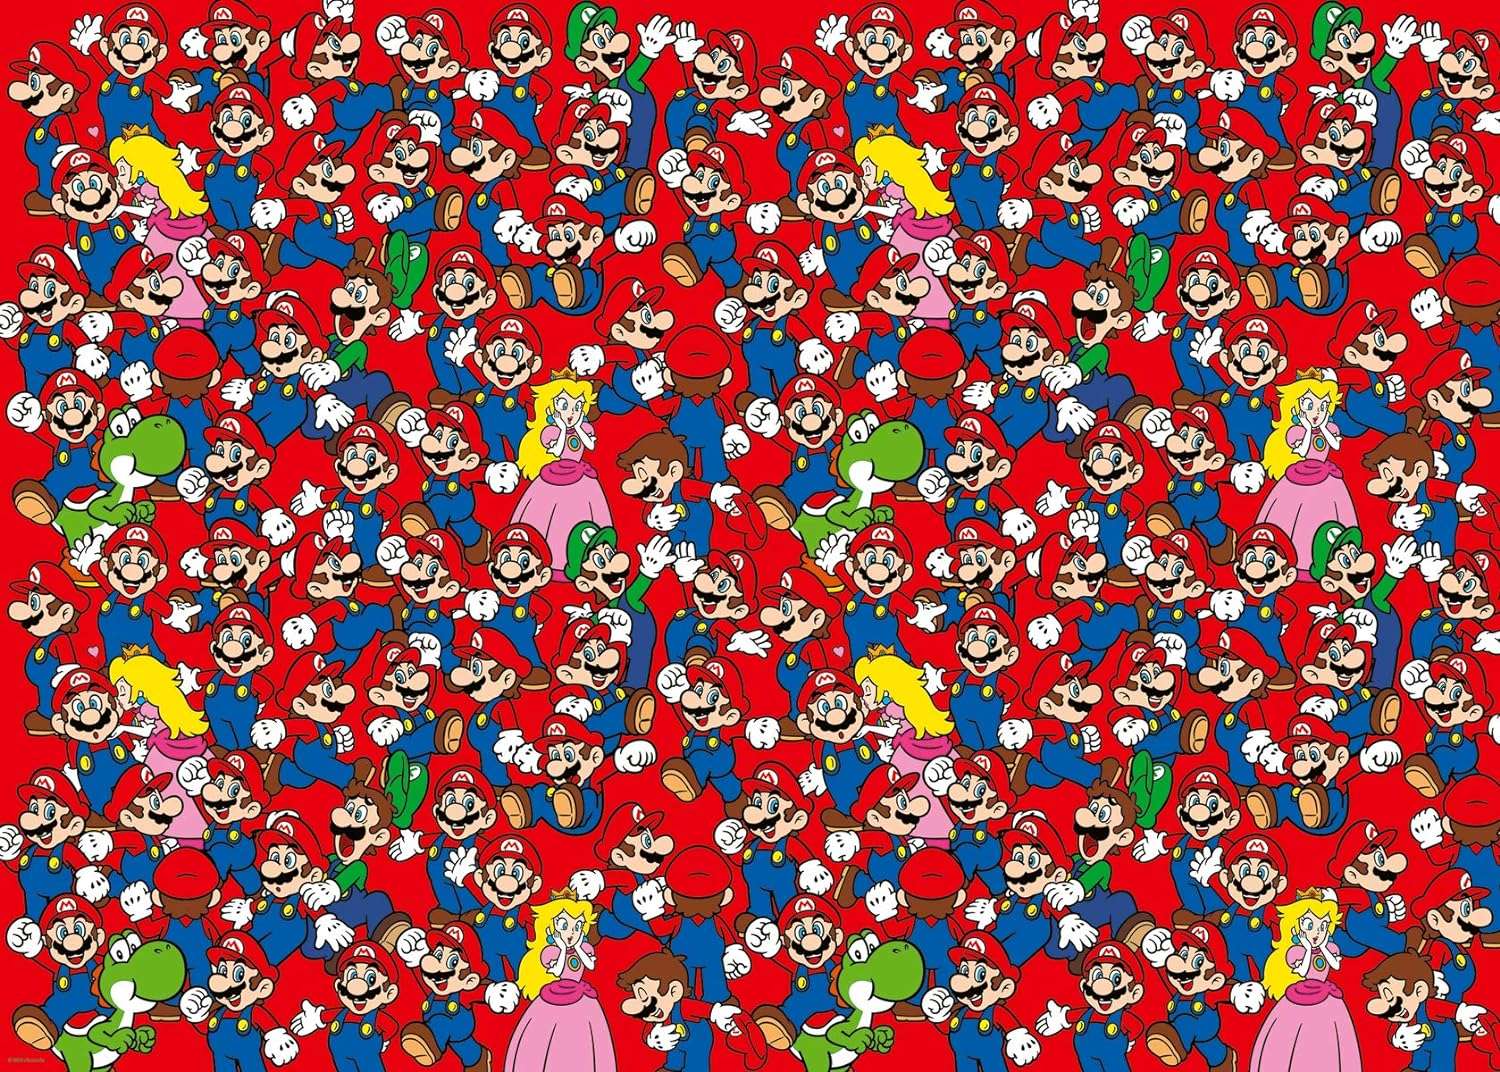 Super Mario Online-Puzzle vom Foto